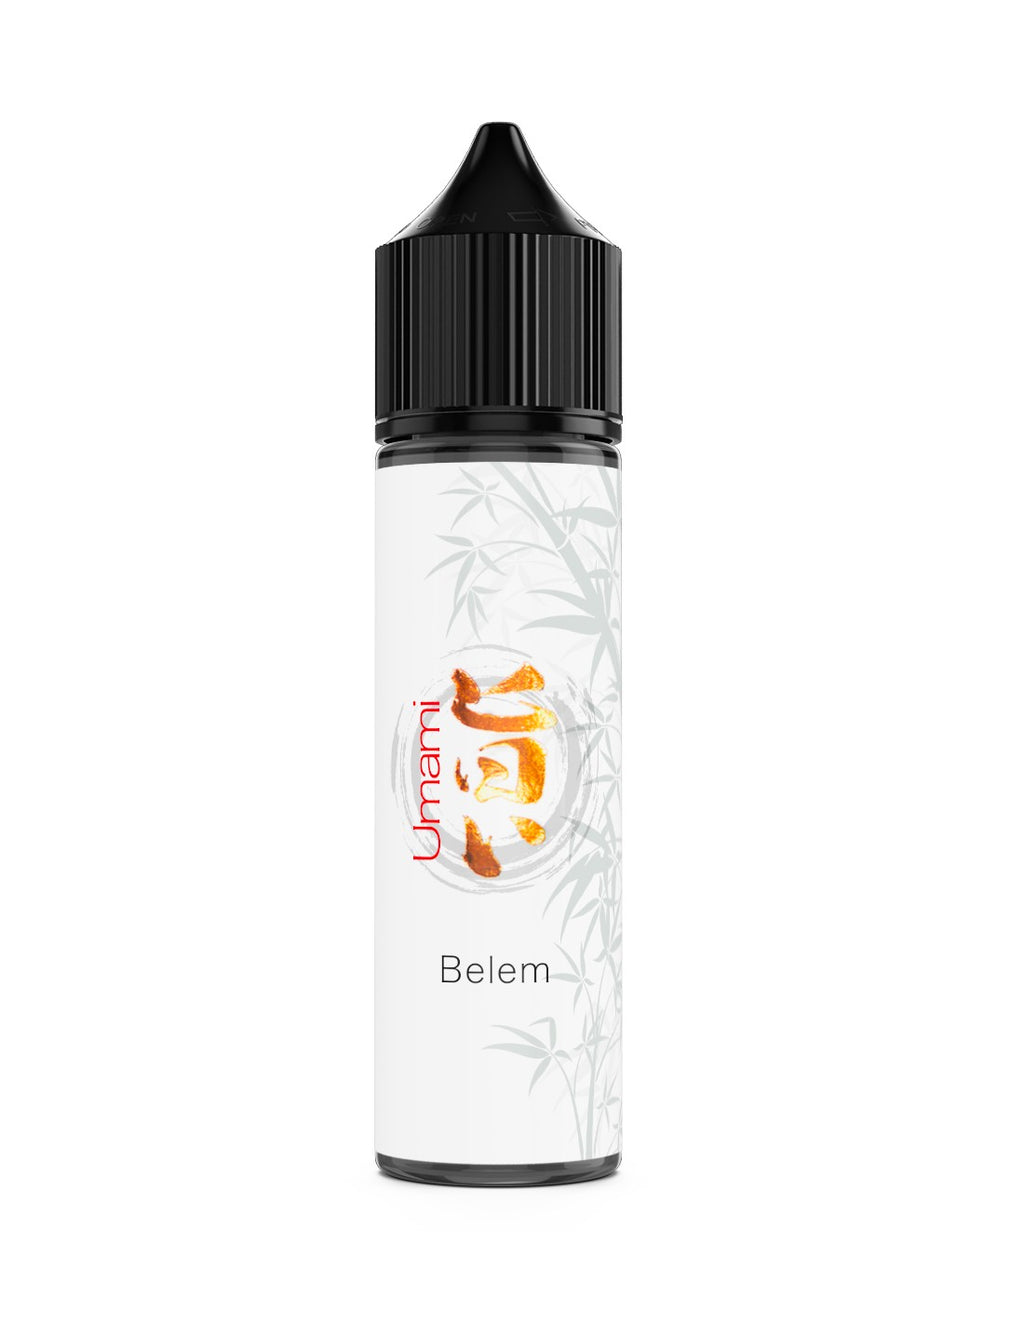 Belem est une évocation pâtissière autour de la vanille, inspiré de la savoureuse patisserie Portugaise.